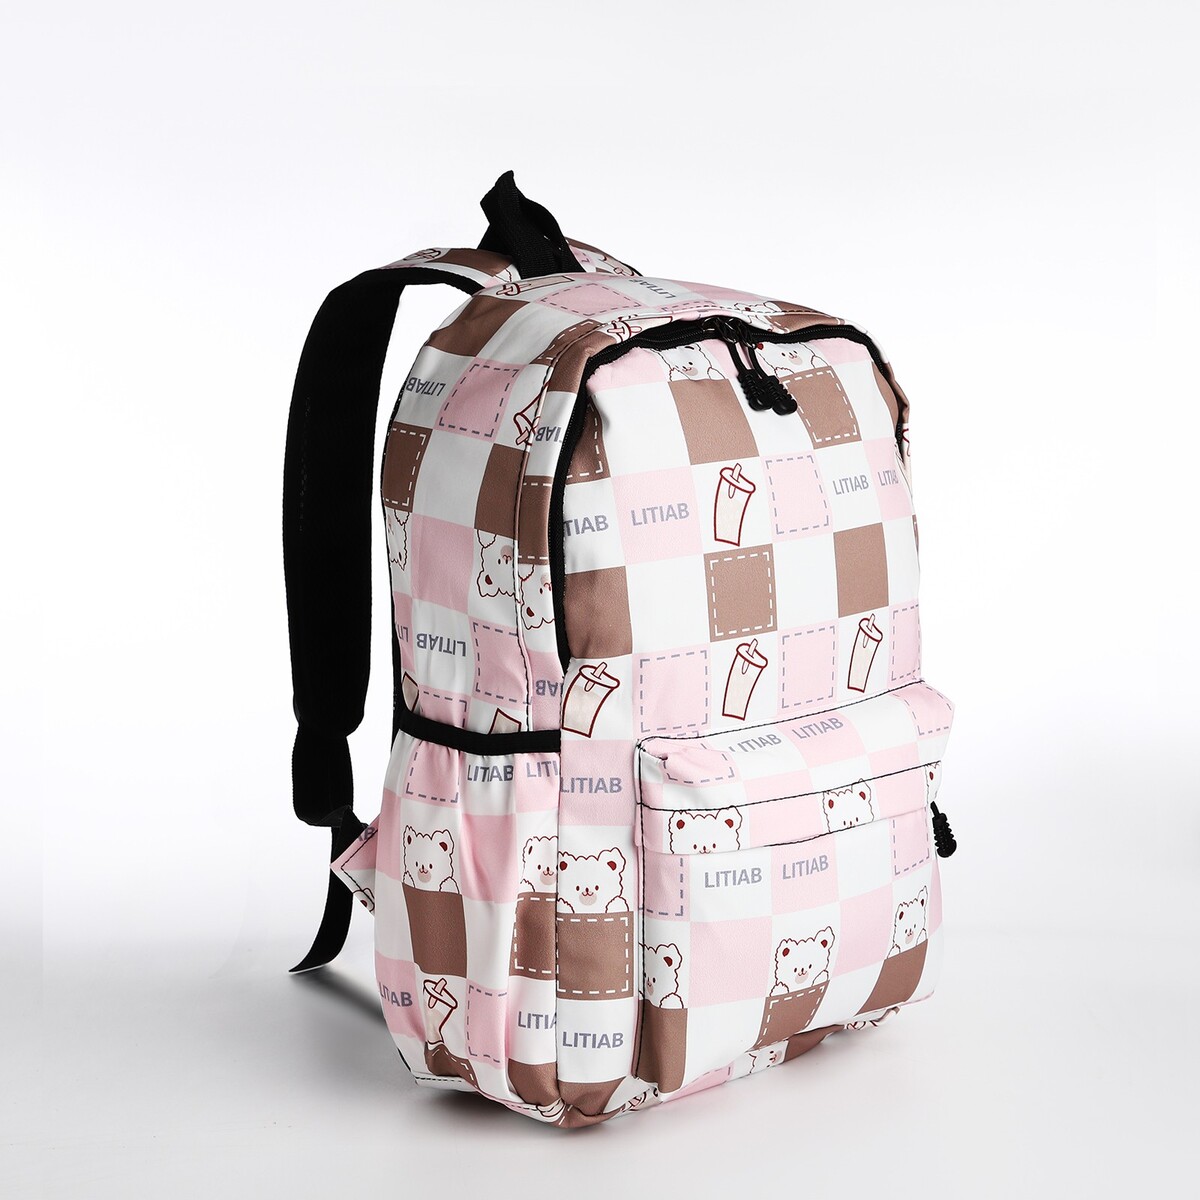 Рюкзак молодежный из текстиля, 3 кармана, цвет бежевый/розовый рюкзак молодежный из текстиля 3 кармана розовый